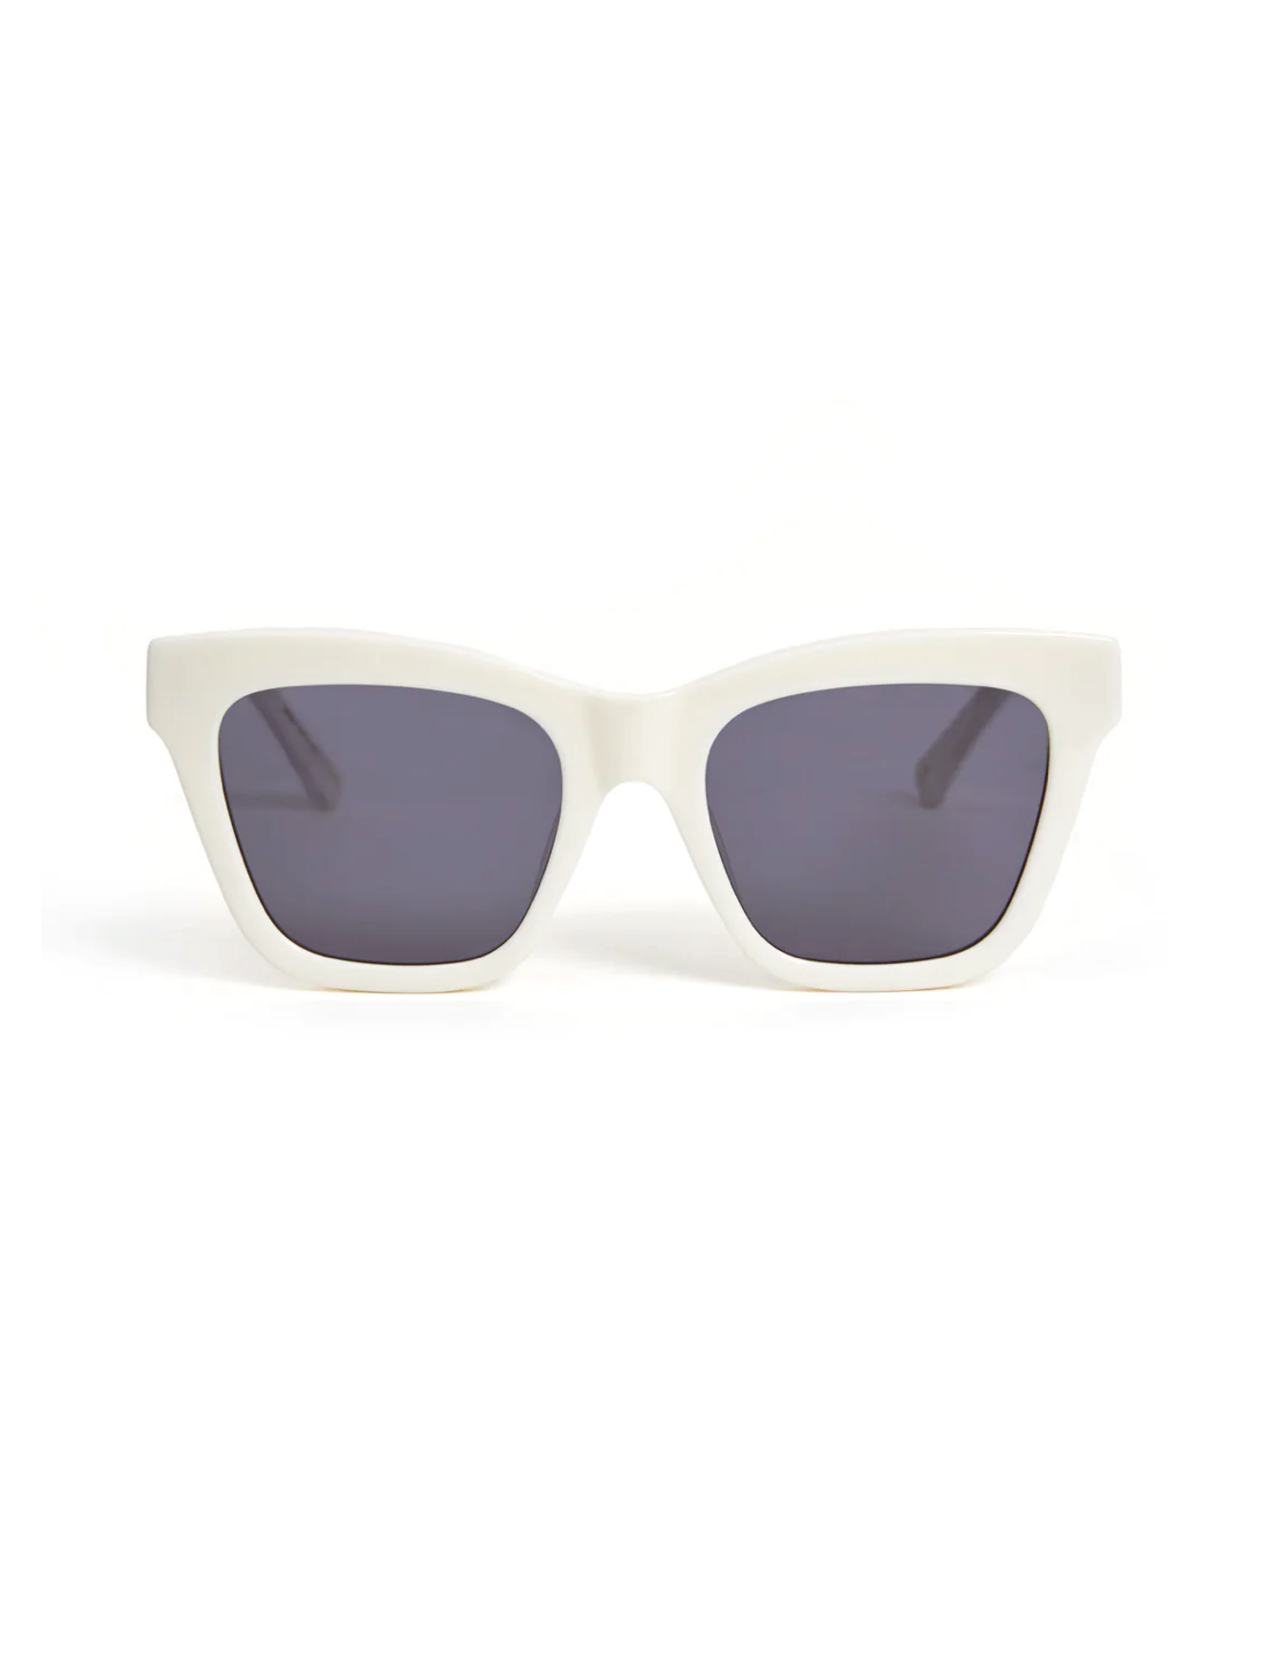 Clare V - Heather sunglasses cream